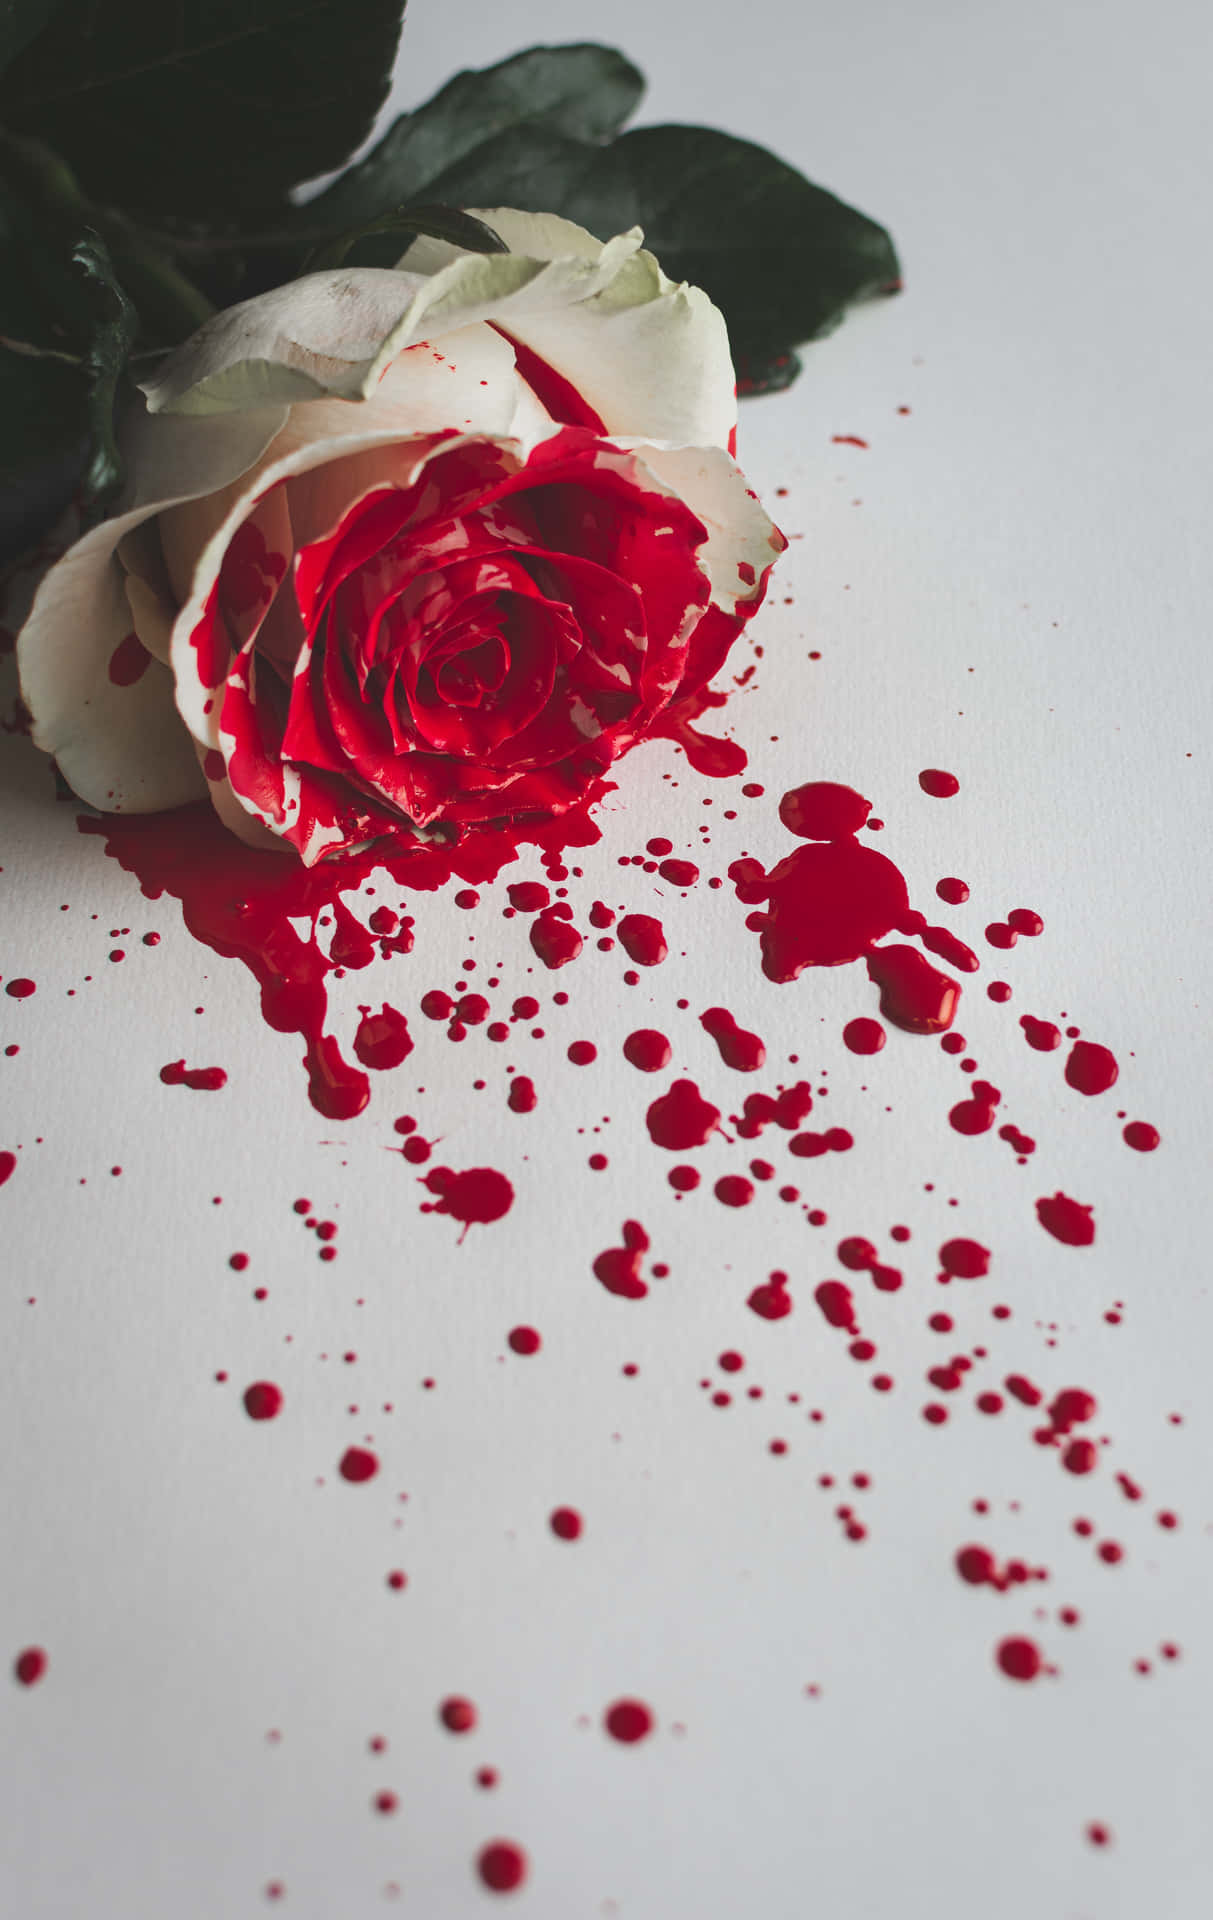 Portrait Roses Blood Splatter Background